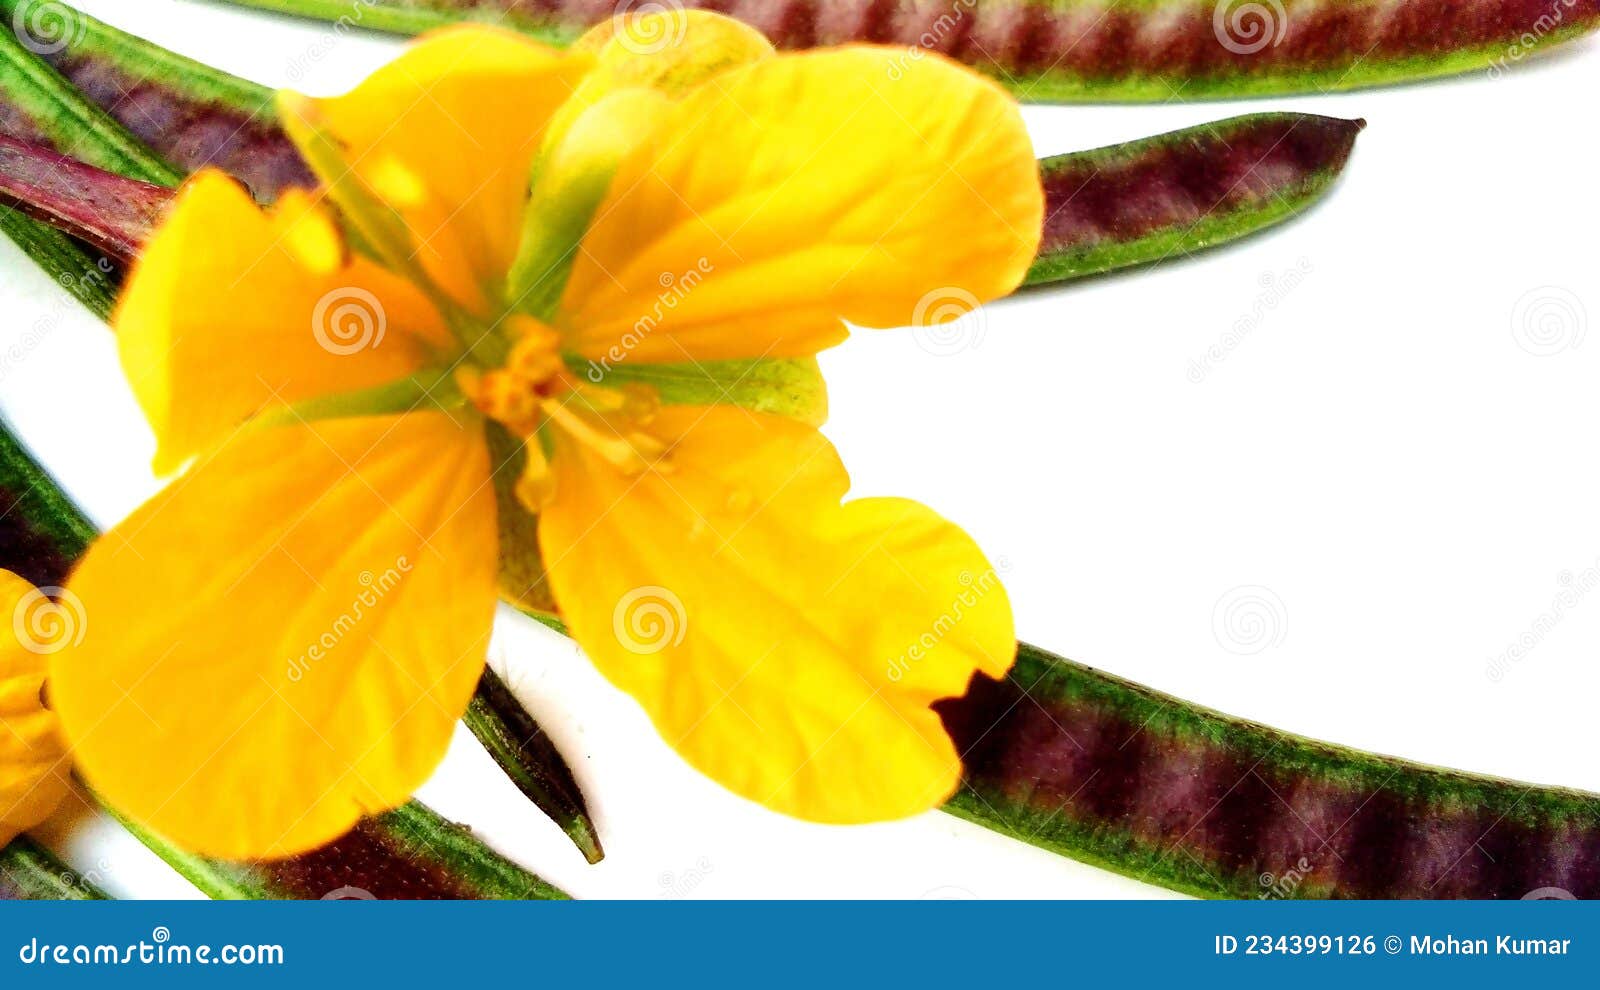 臭节草-神农架植物-图片